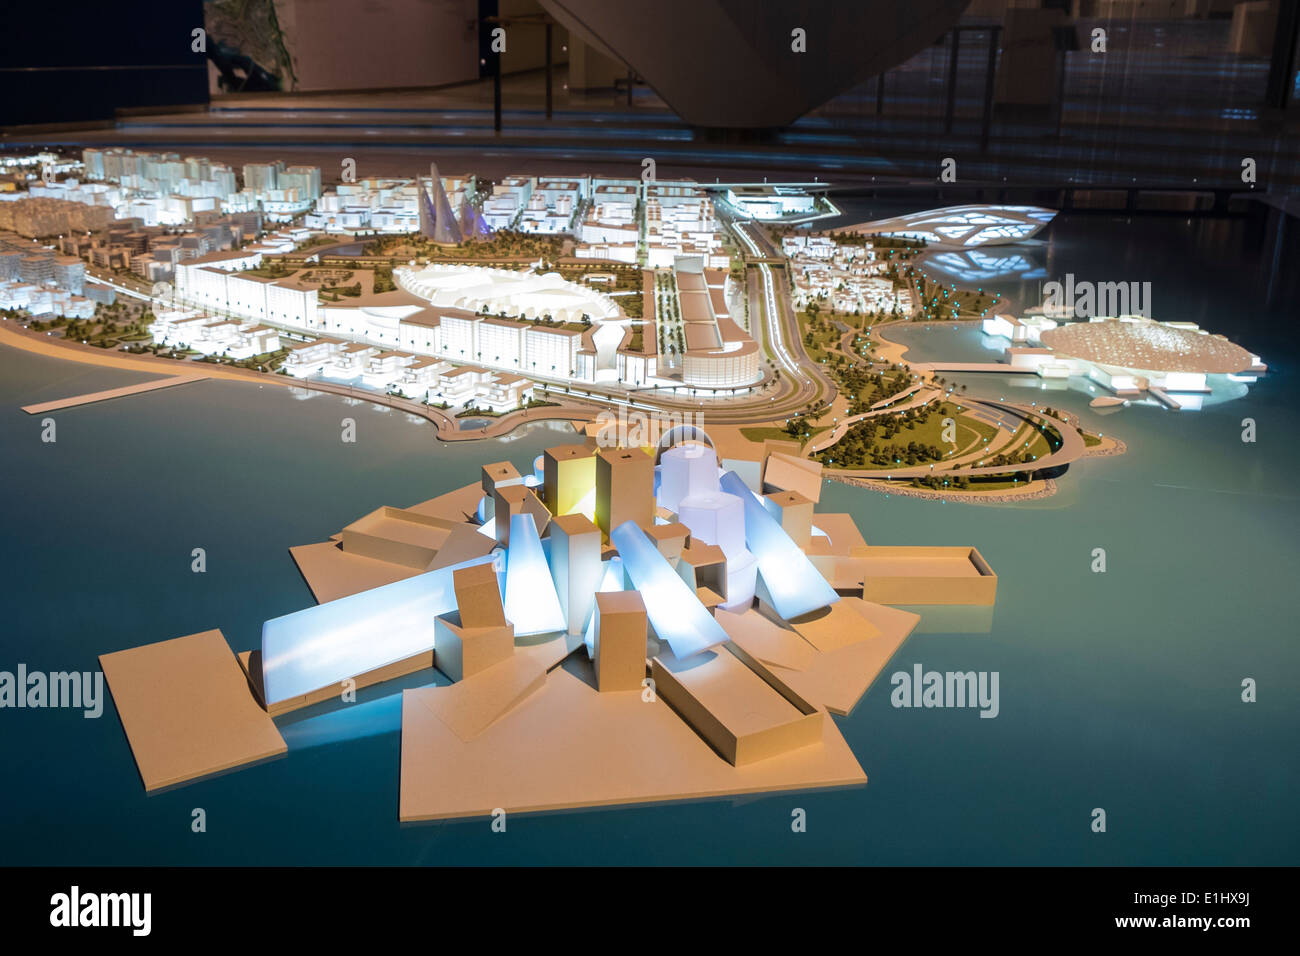 Ansicht des Masterplans mit neuen Museen (Guggenheim im Vordergrund) für Saadiyat Island in Abu Dhabi Vereinigte Arabische Emirate Stockfoto